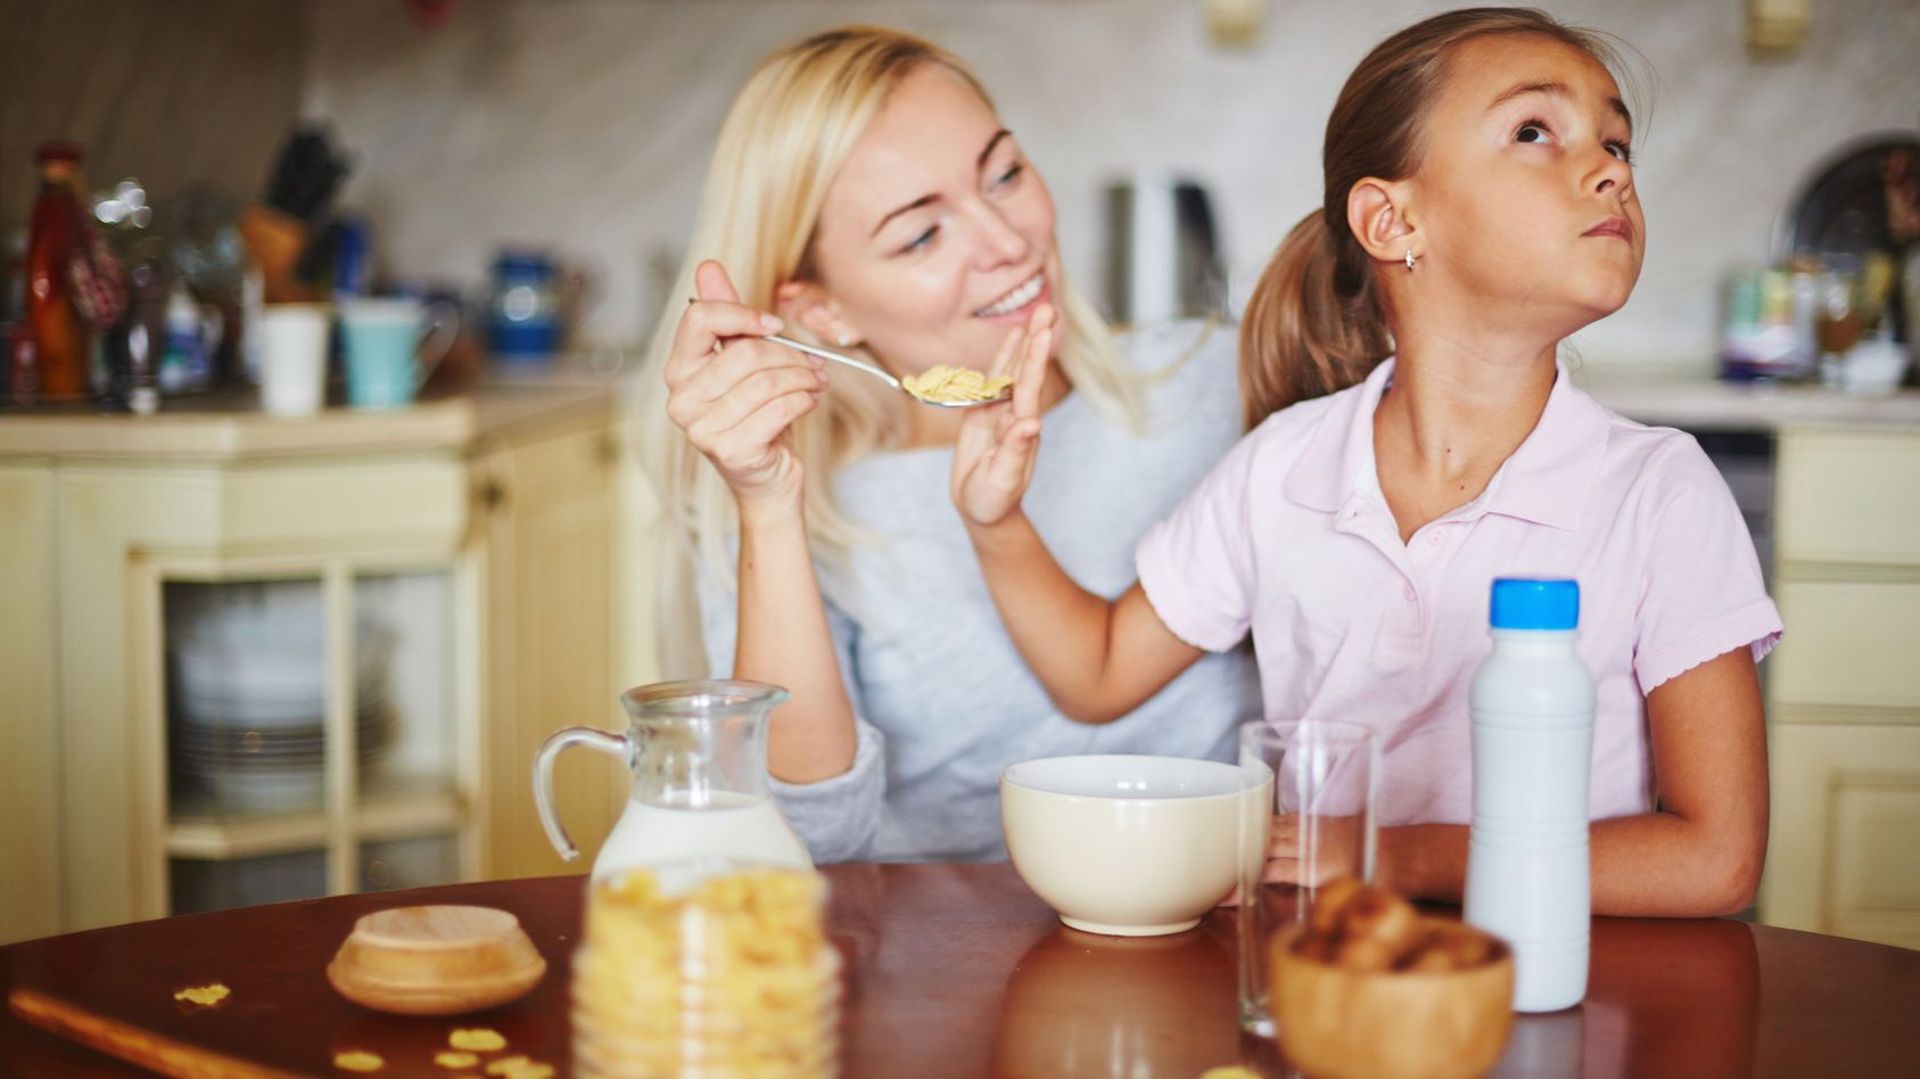 Comment nos parents influencent-ils notre relation à la nourriture ? 